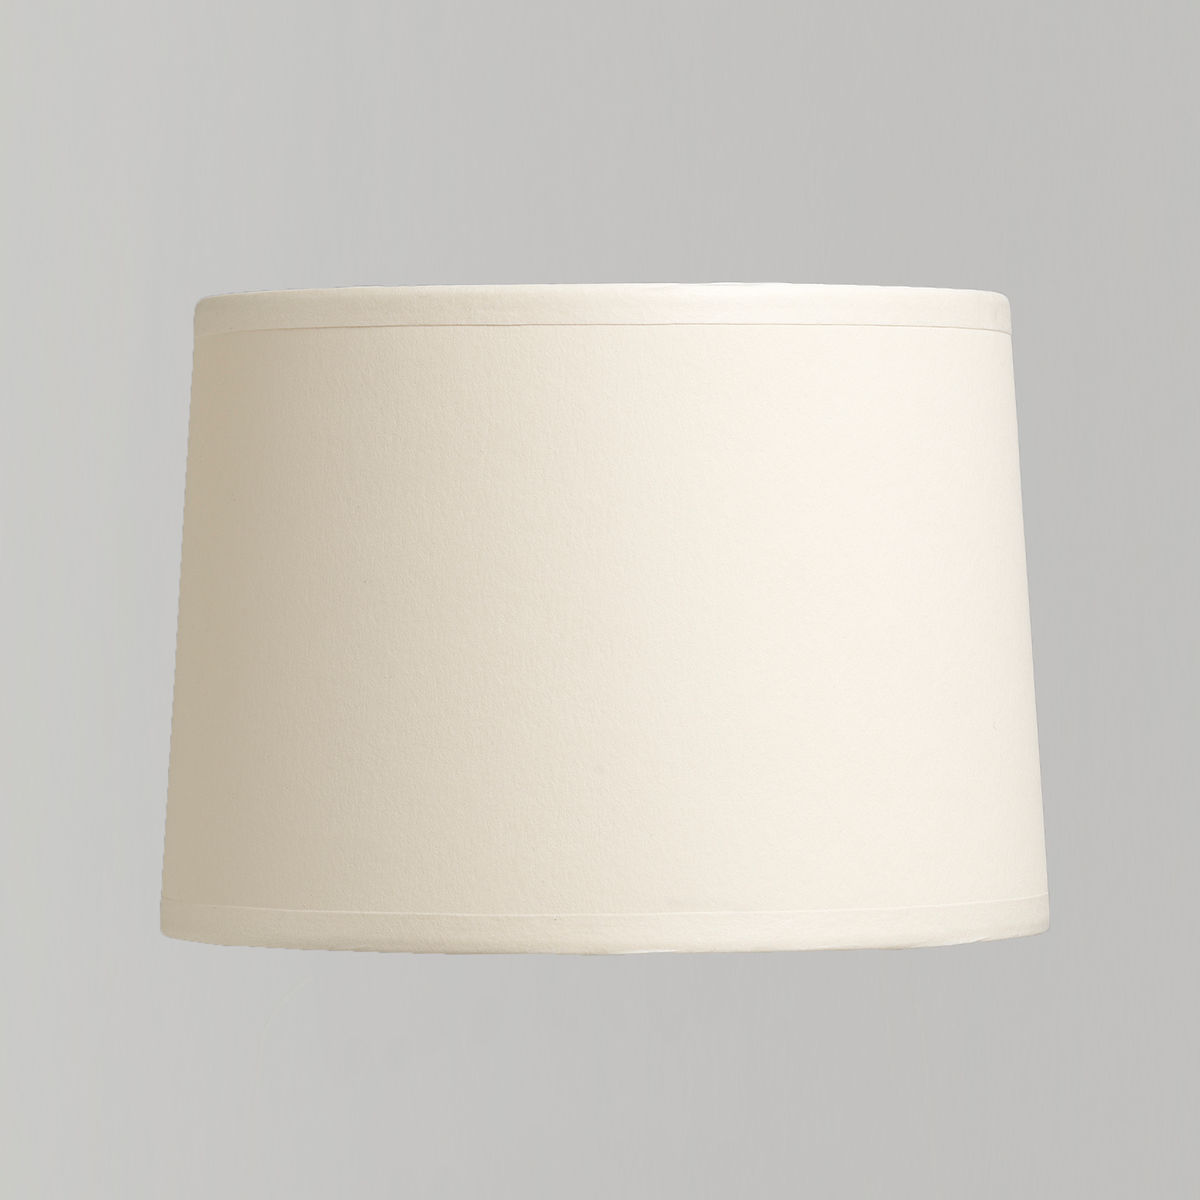 Cream card lampshade